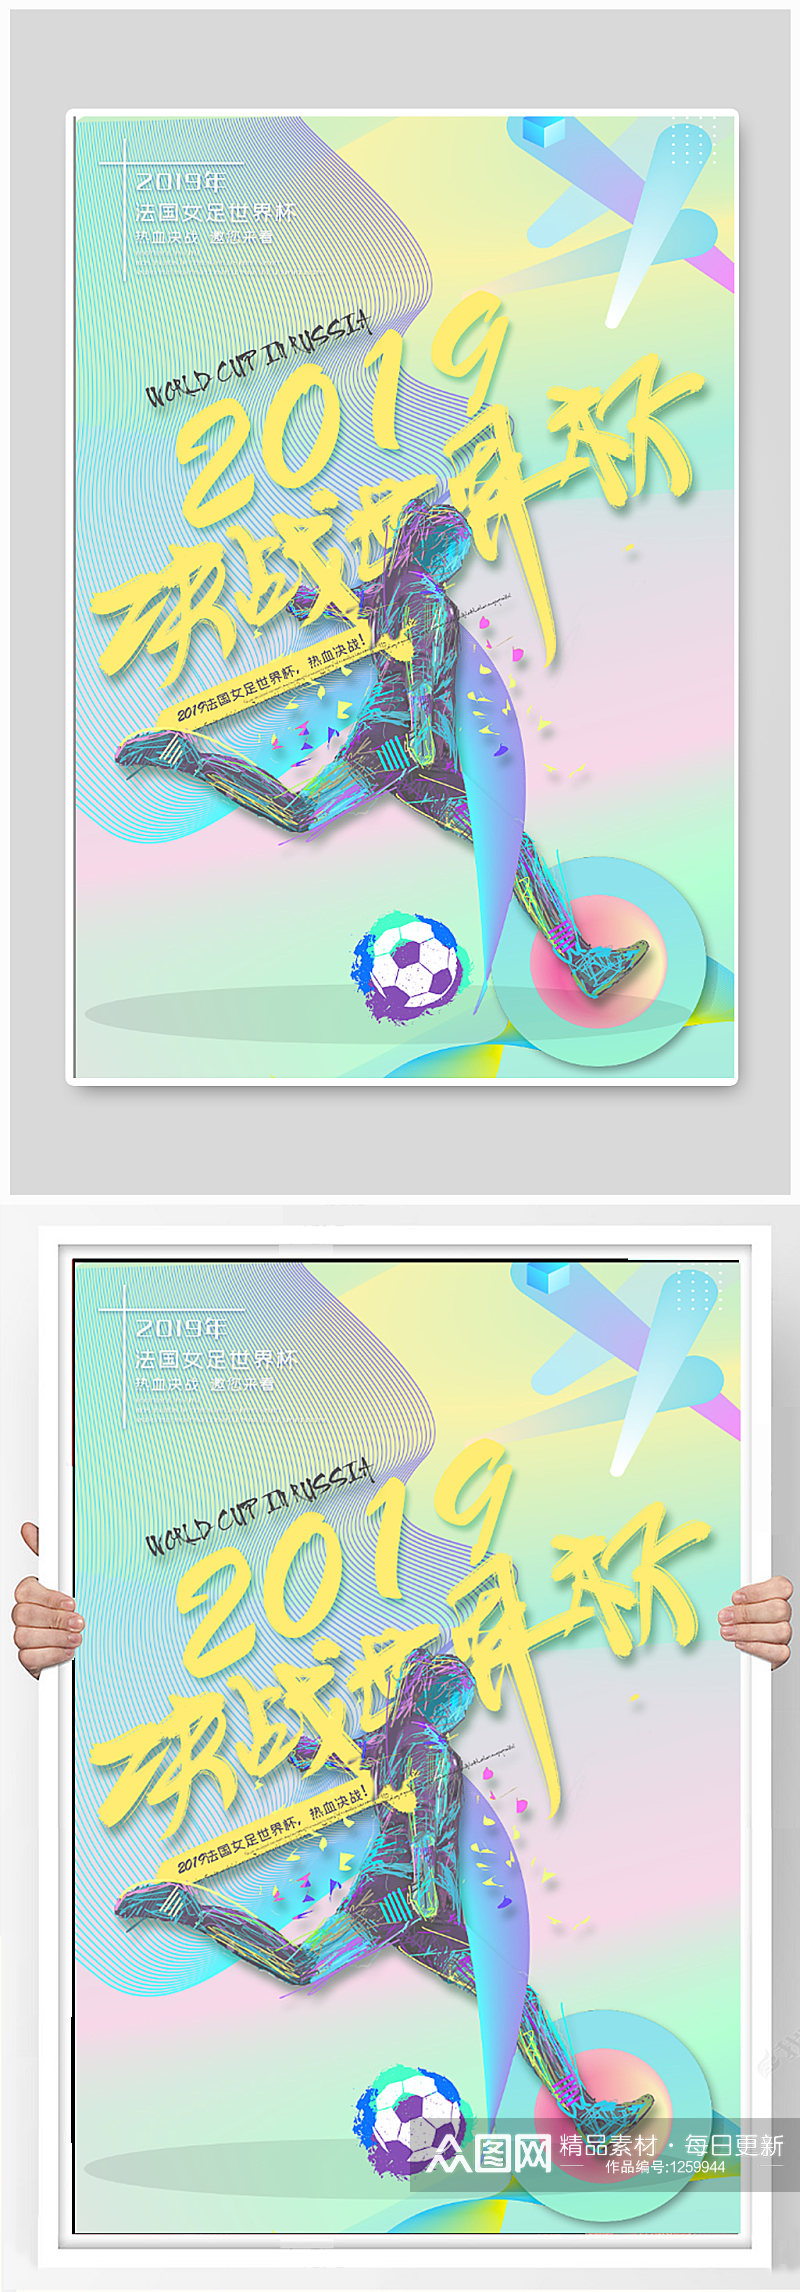 足球世界杯海报展板素材